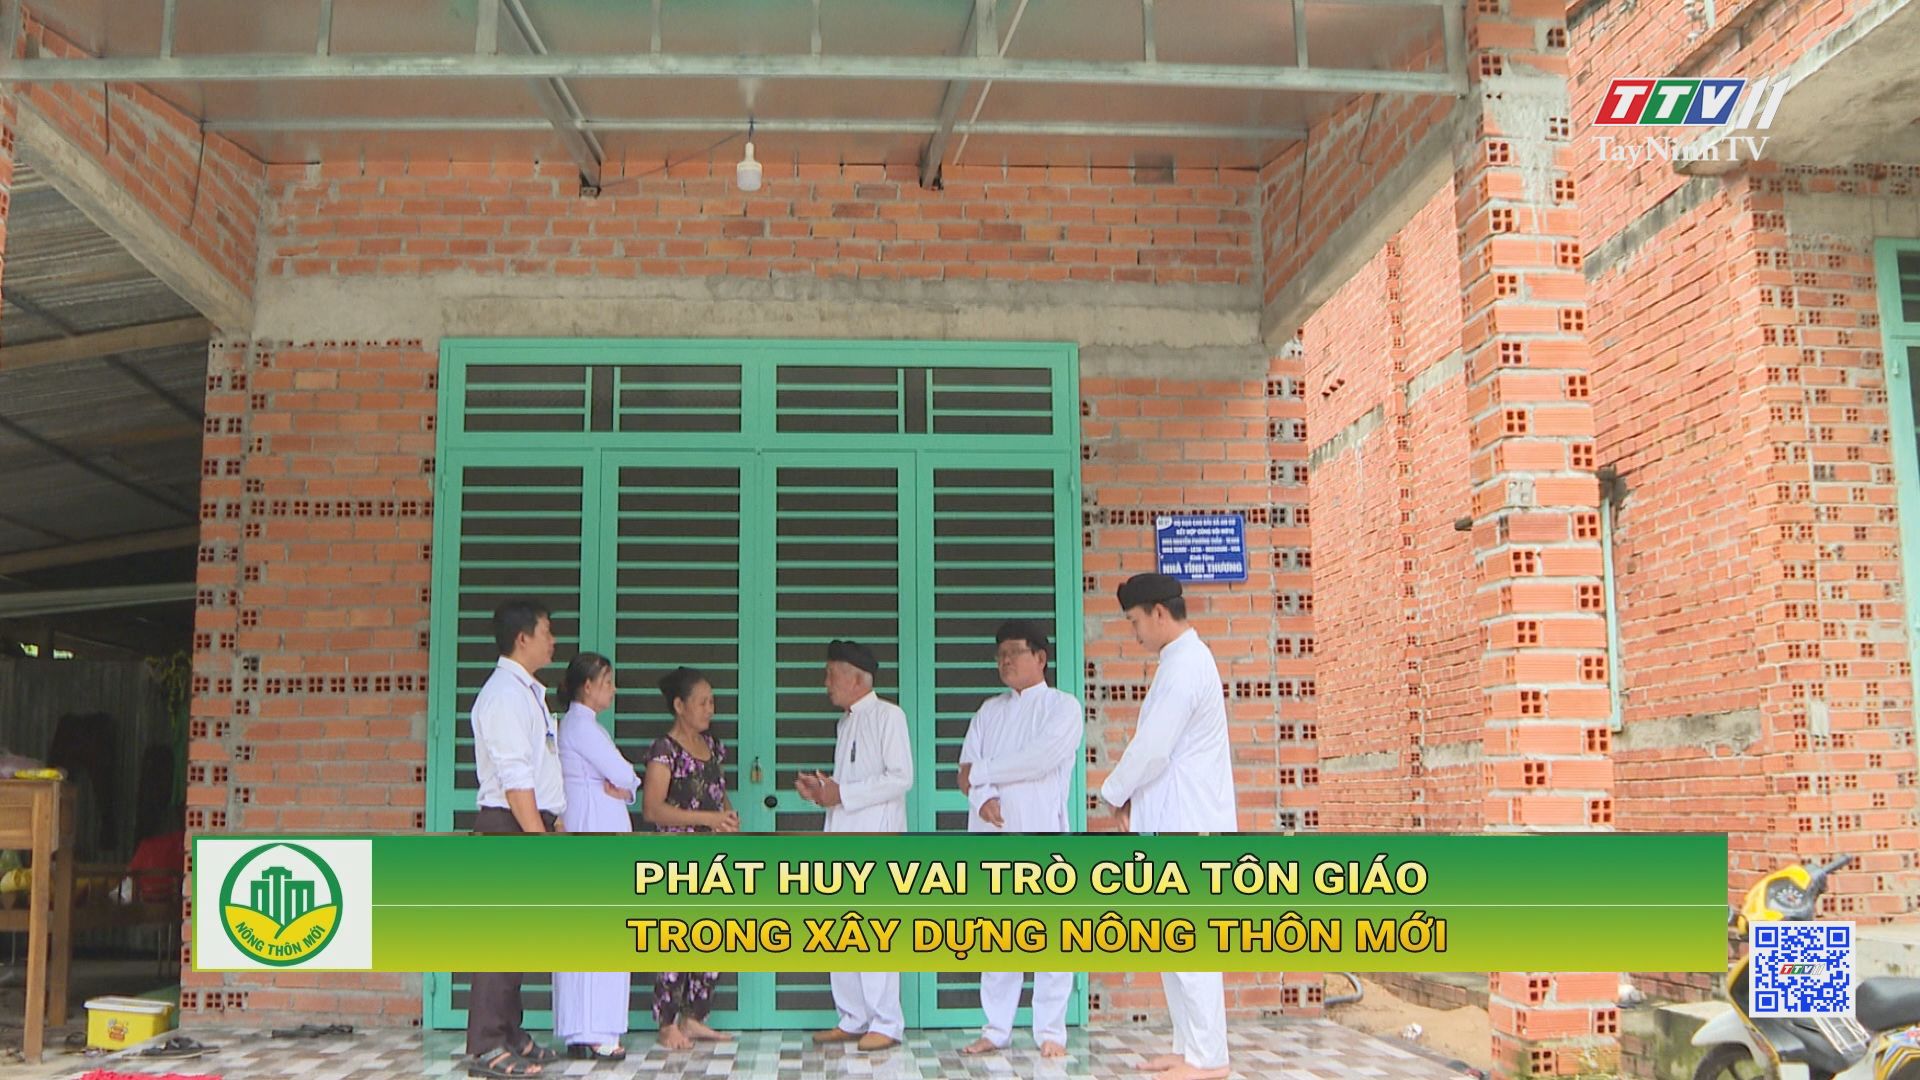 Phát huy vai trò của tôn giáo trong xây dựng nông thôn mới | TayNinhTV